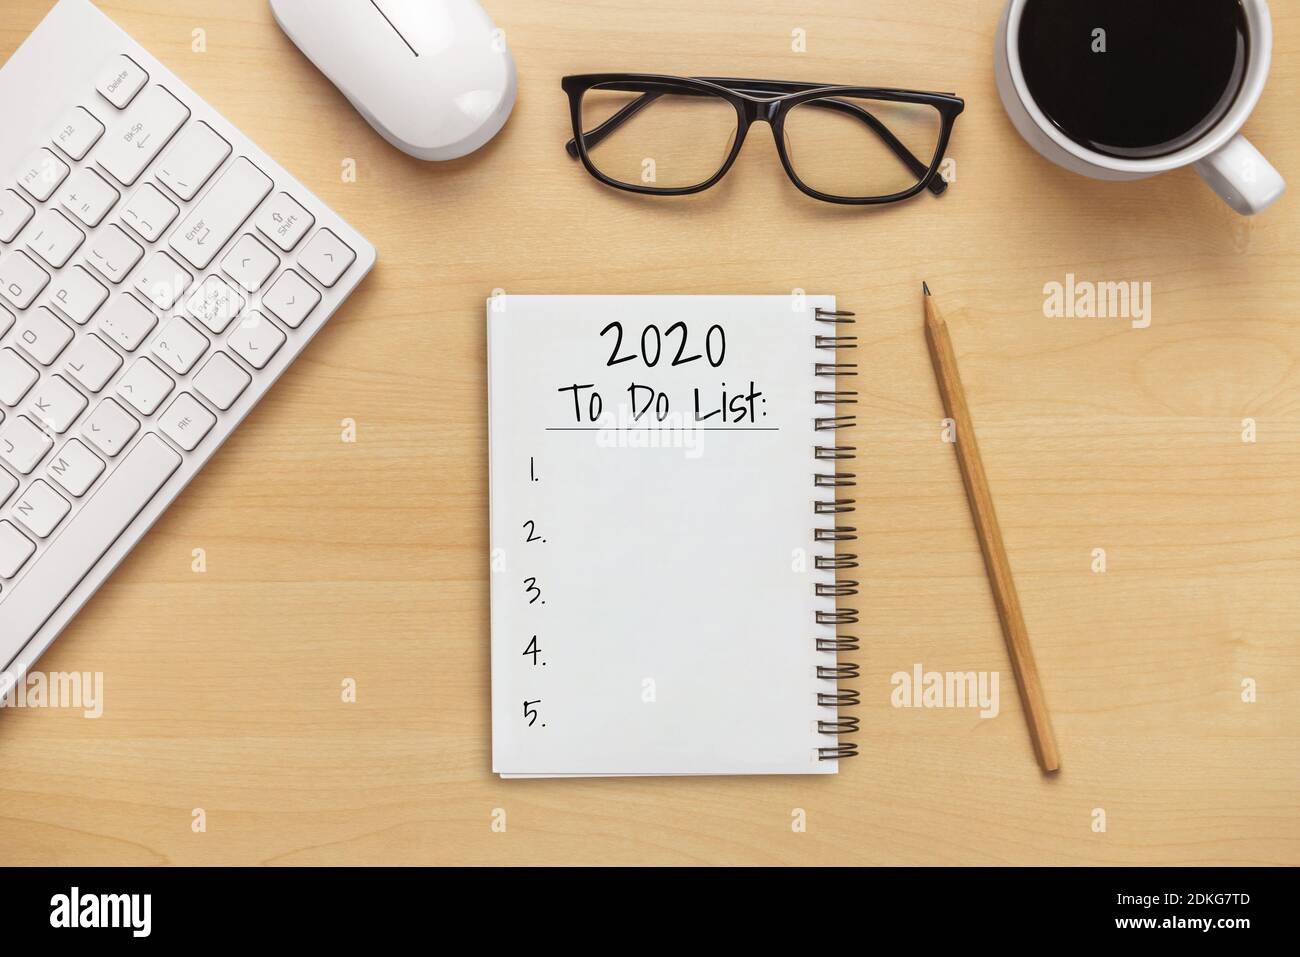 Neujahrsauflösung Zielliste 2020 - Business Office Desk Mit handgeschriebendem Notizbuch über die Planauflistung der neuen Jahresziele und -Beschlüsse Stockfoto